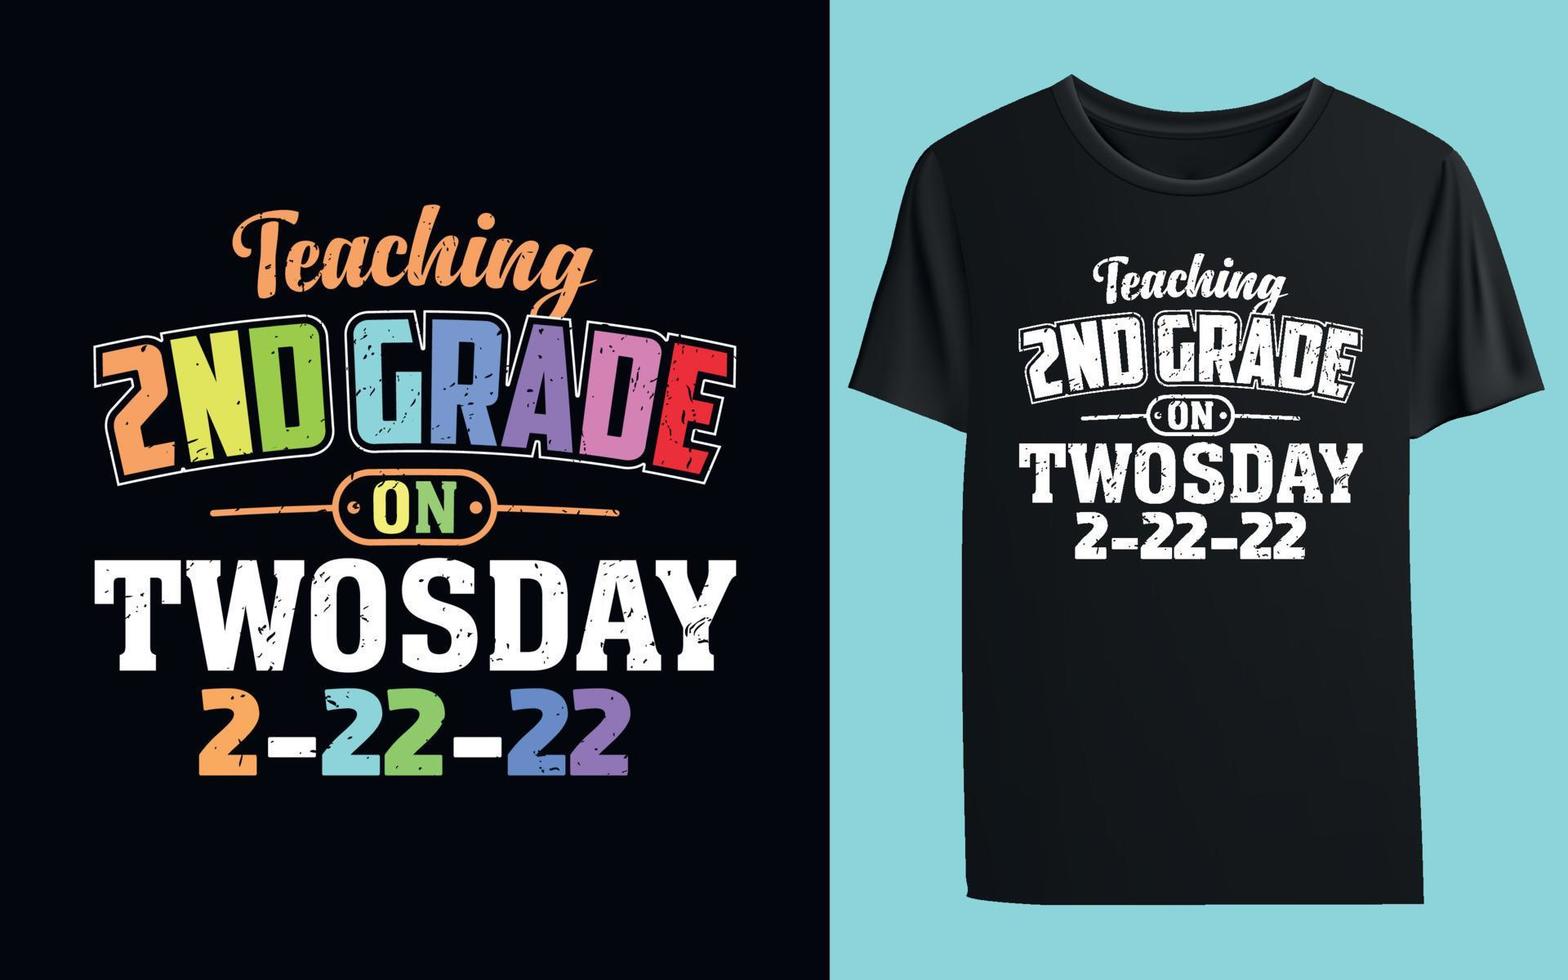 enseñando 2do grado en twosday 2-22-2022 camiseta divertida del maestro de escuela vector